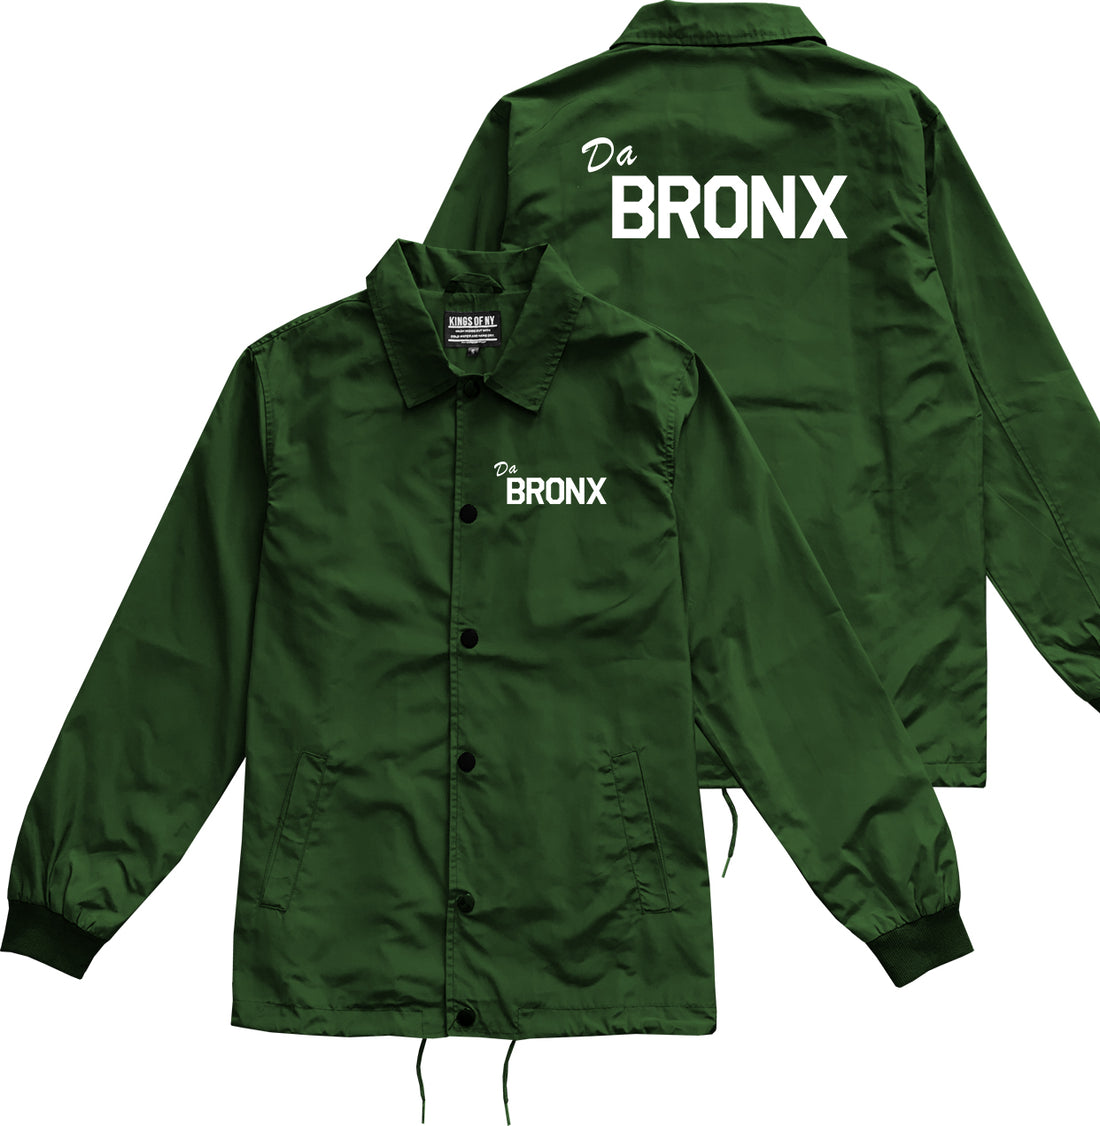 Da Bronx Mens Coaches Jacket Green by Kings Of NY